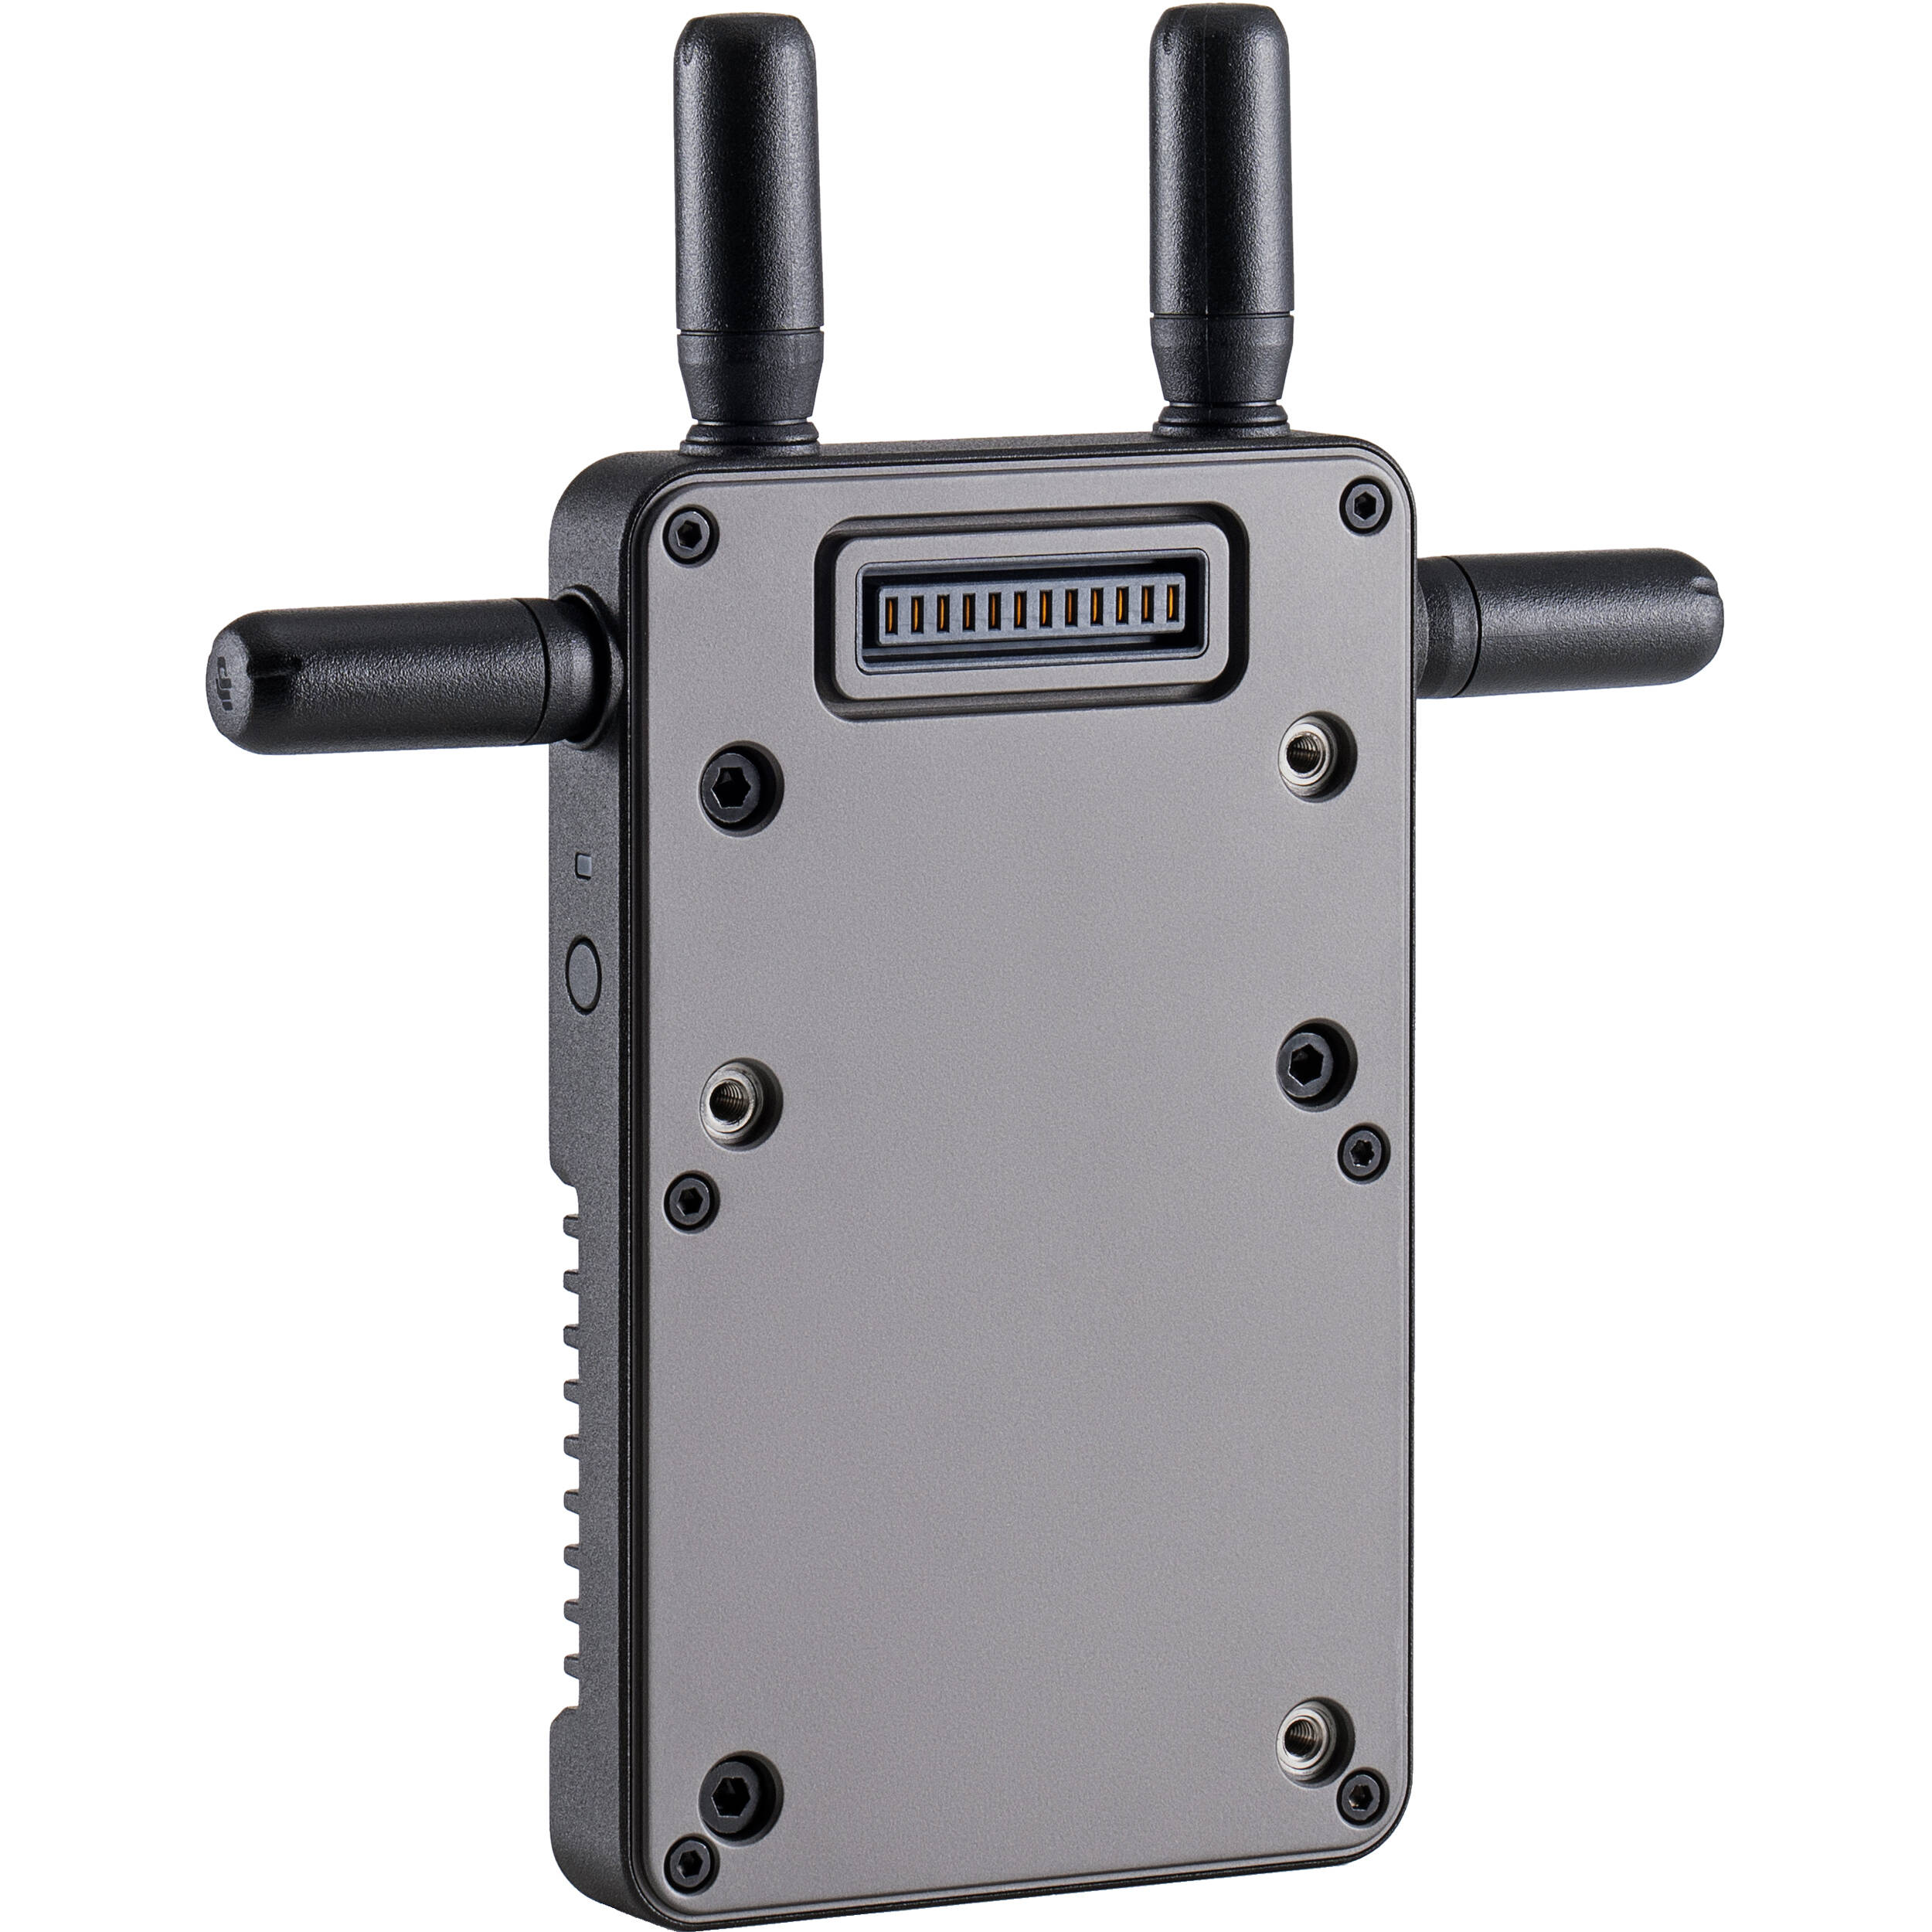 DJI Ronin 4D Video Transmitter có khả năng truyền video 1080p60